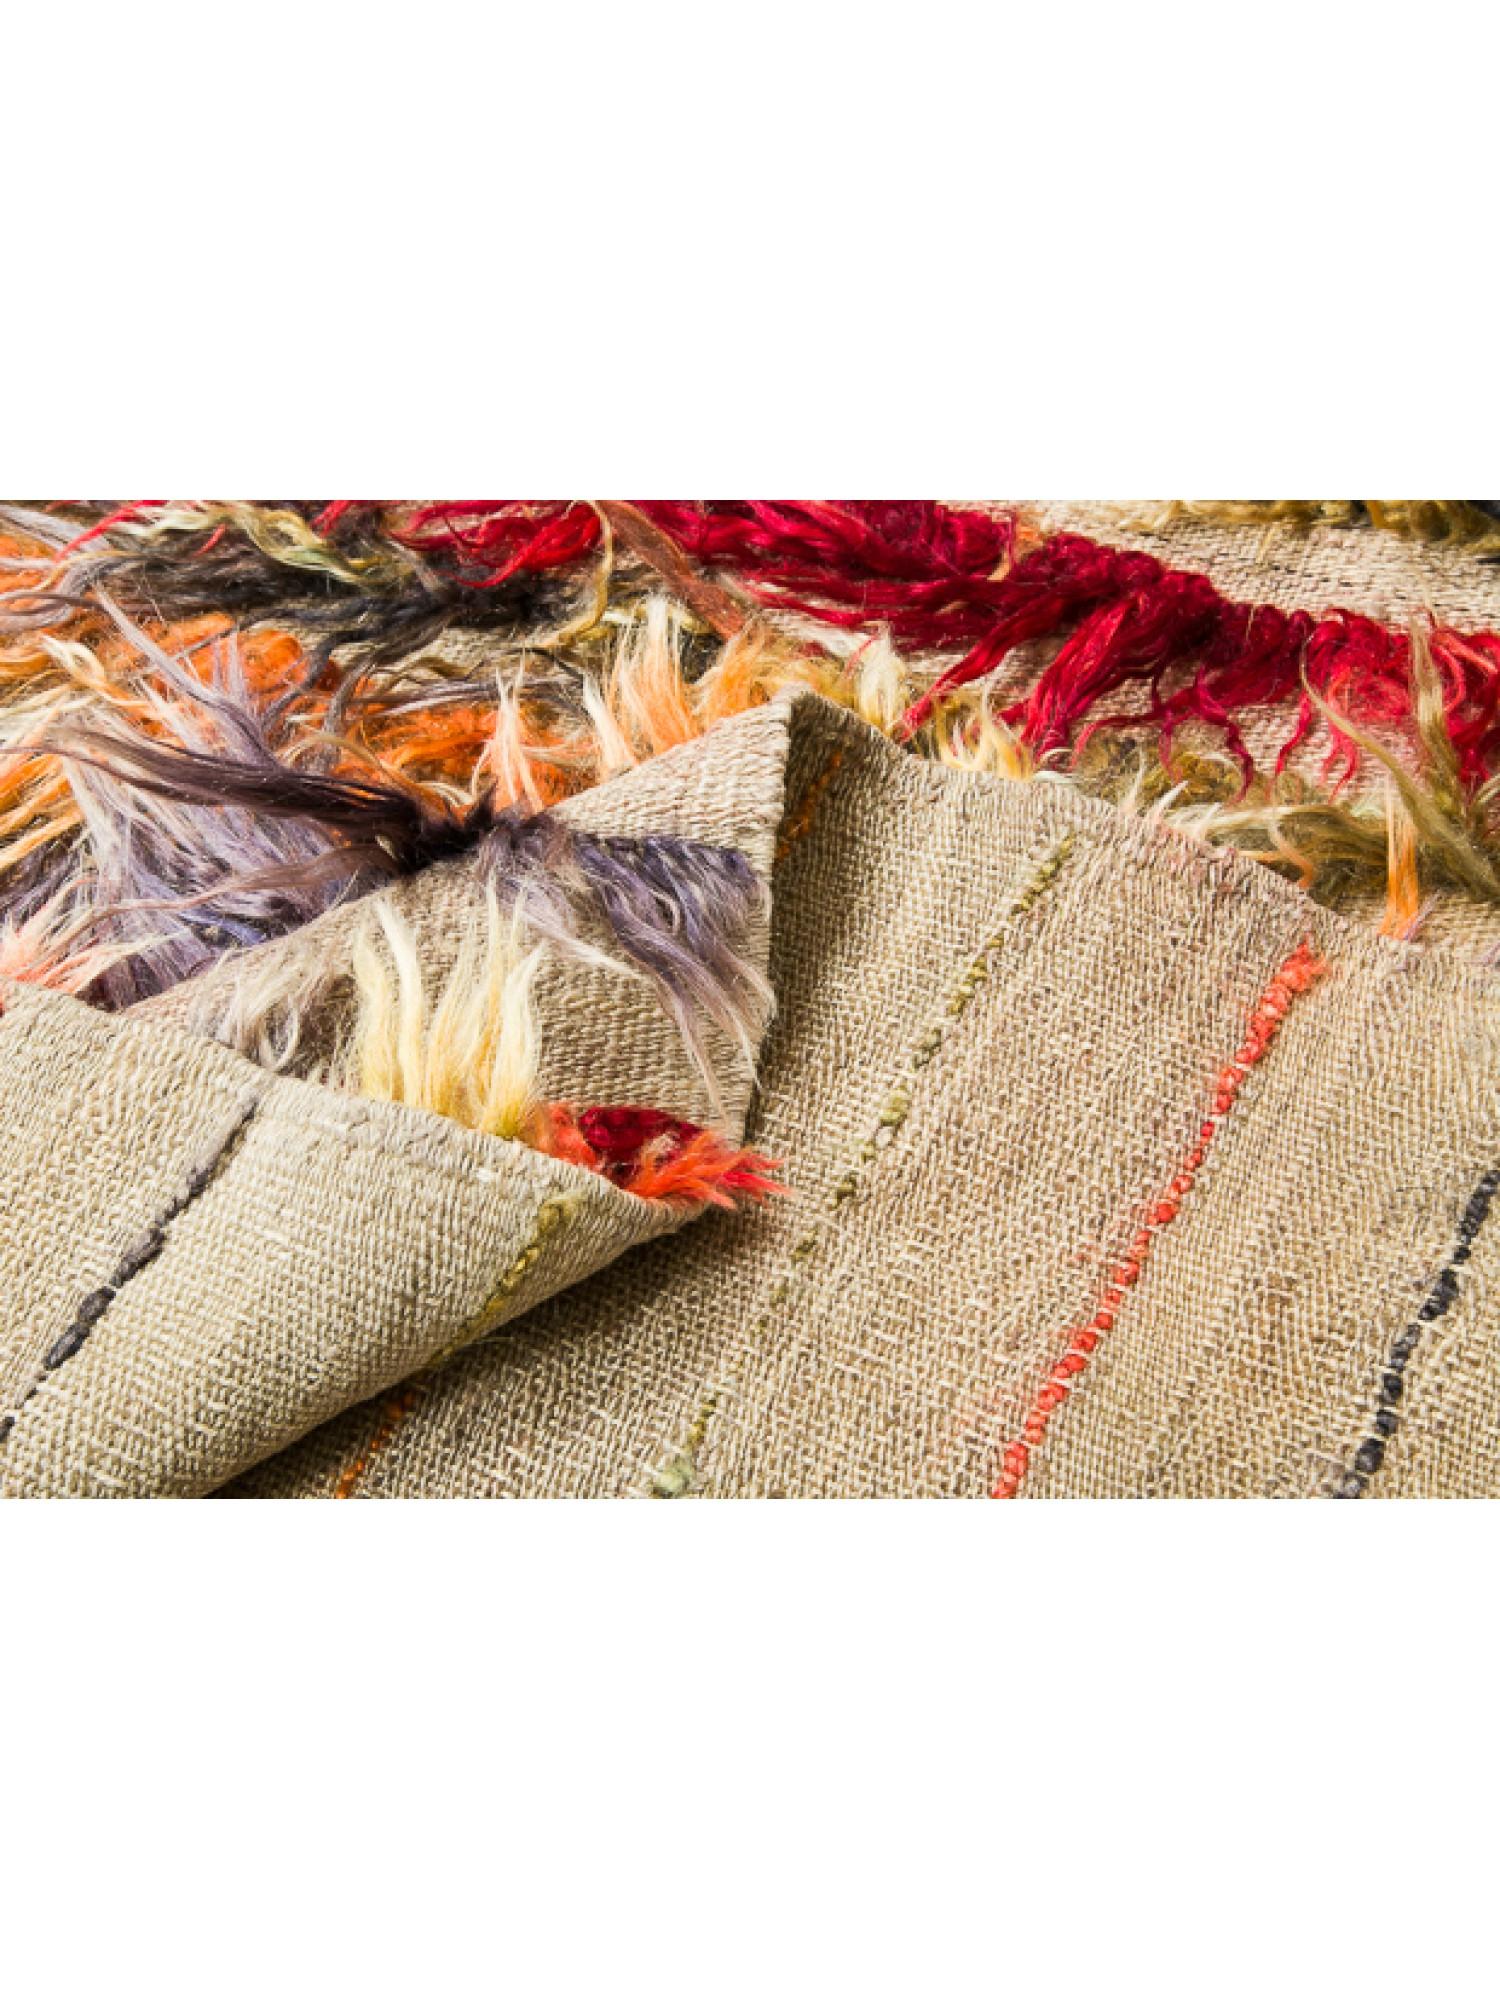 Il s'agit d'un tapis Tulu vintage d'Anatolie centrale, de la région de Konya, avec des poils longs en laine hirsute, en bon état, et une belle composition de couleurs.

Les tapis Tulu d'Anatolie centrale, également appelés tapis Tulu ou kilims